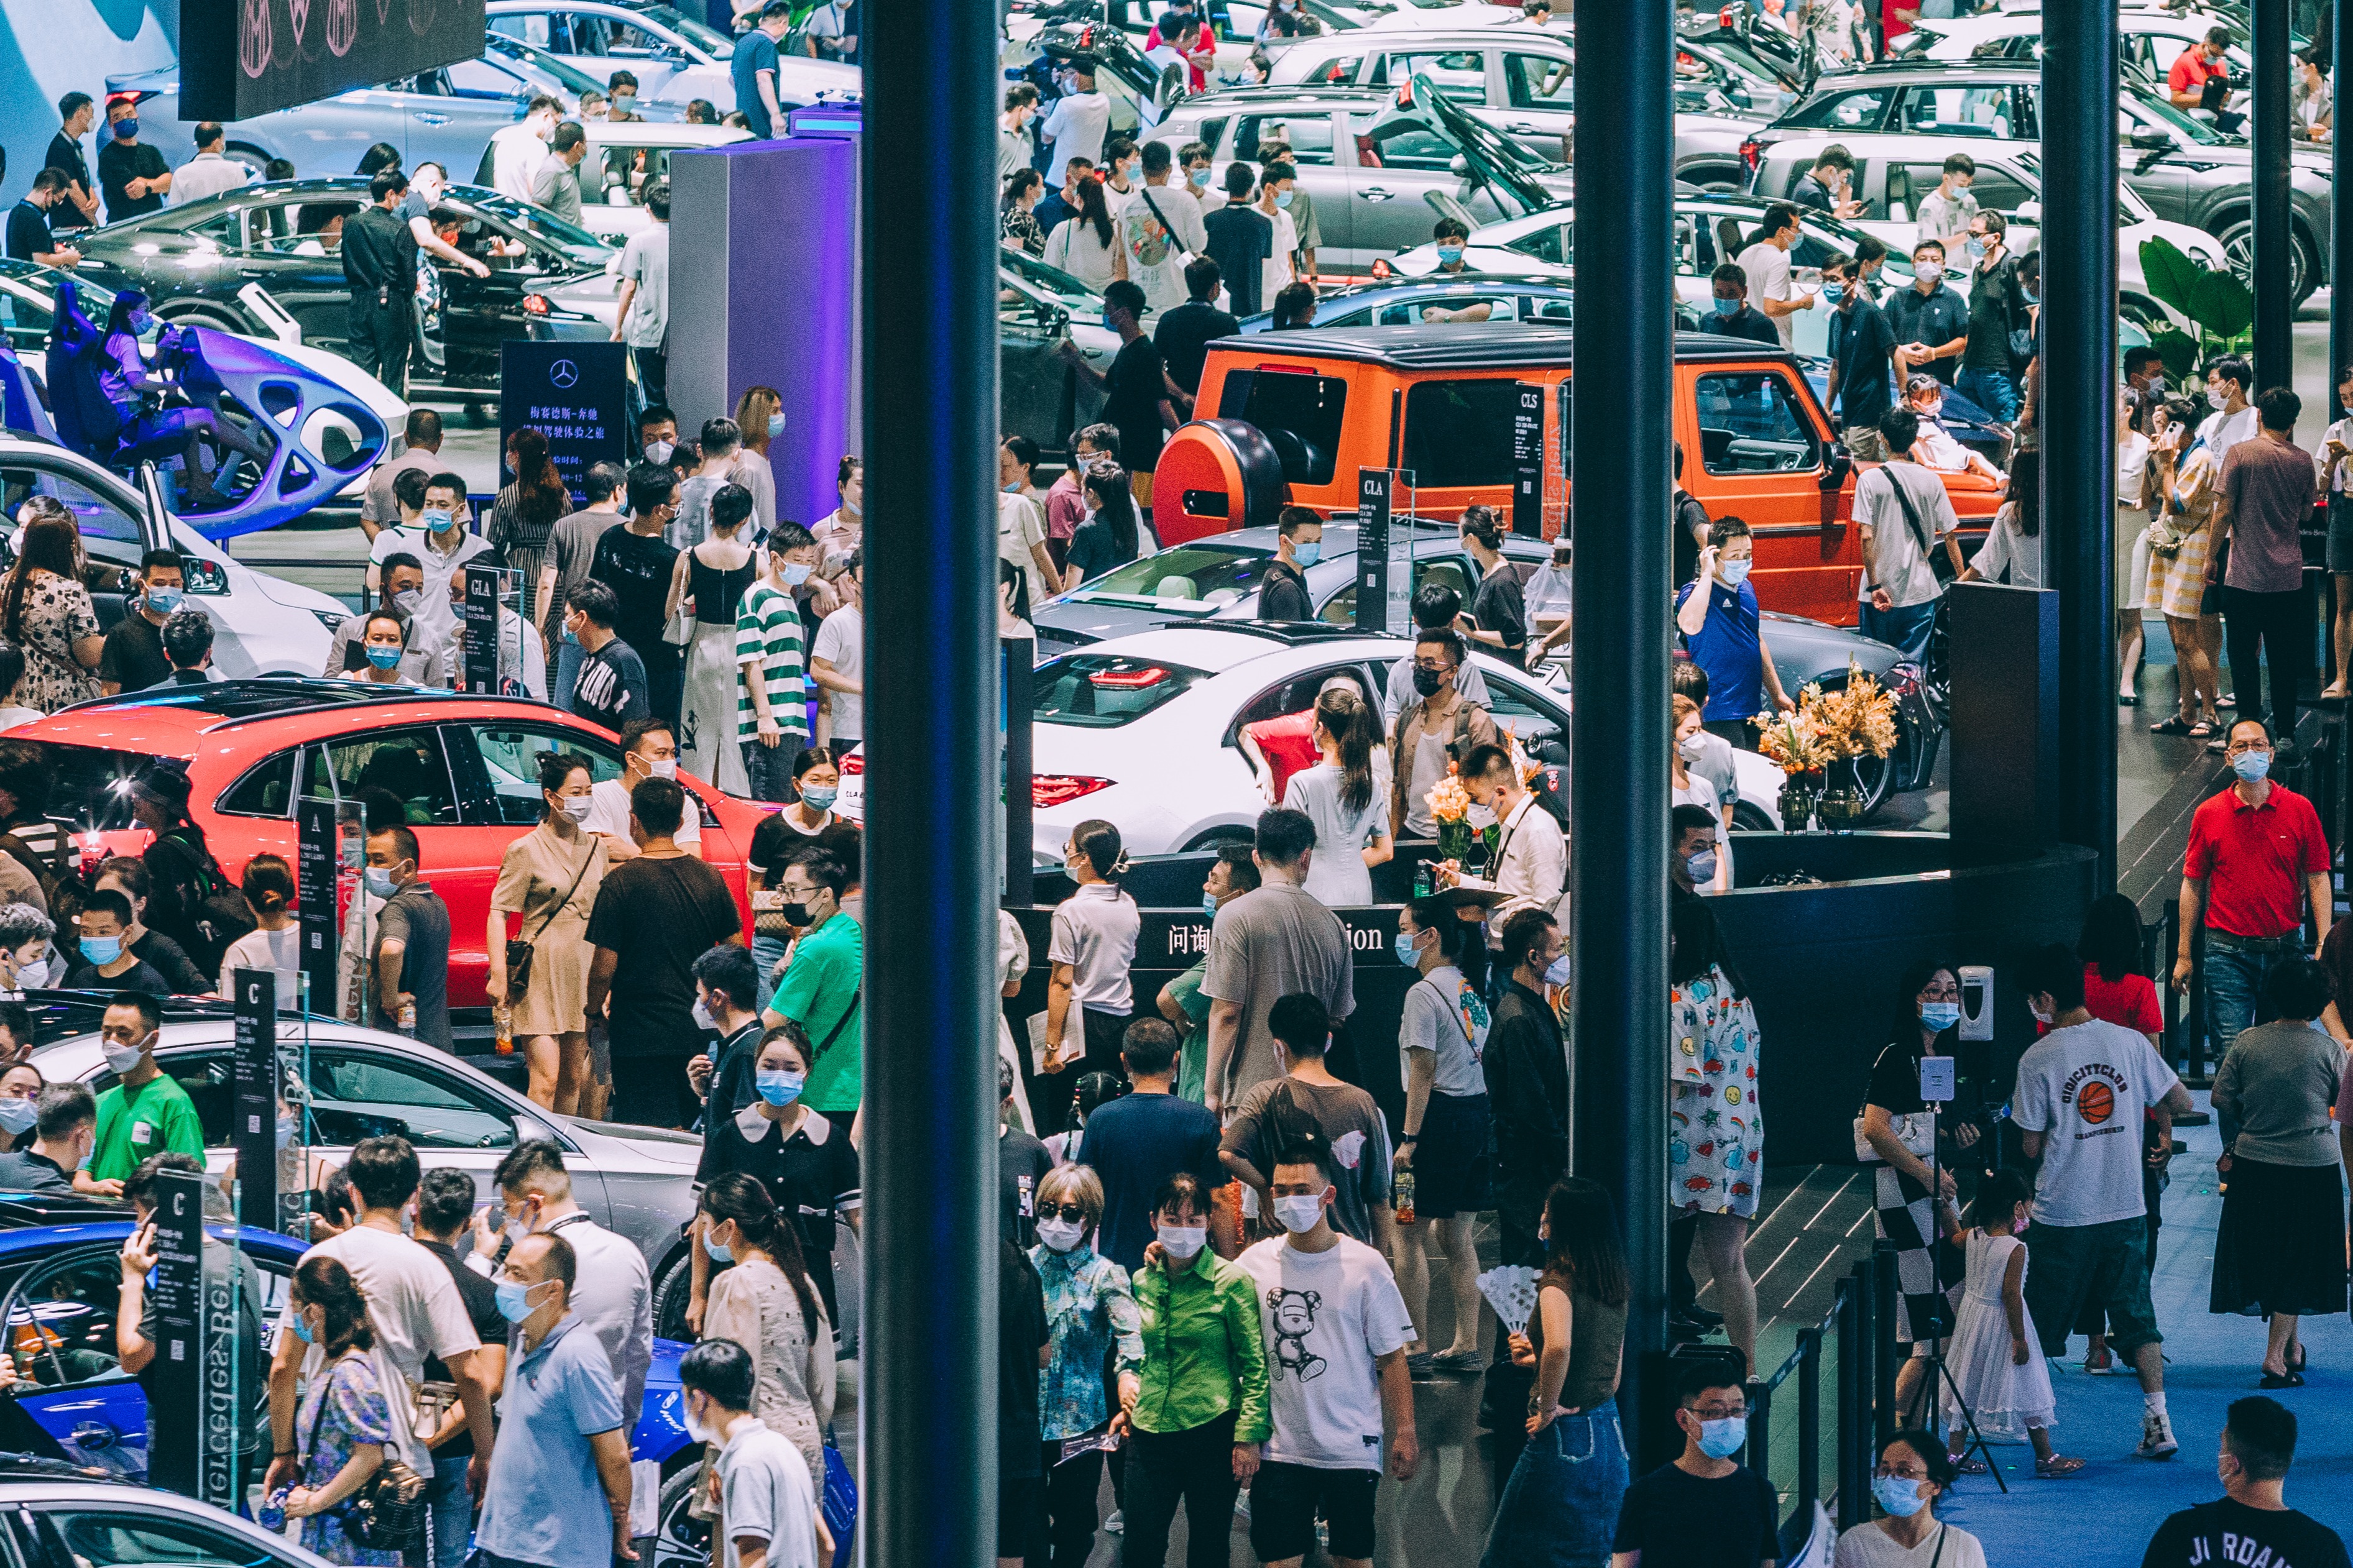 2023成都国际汽车展览会8月25日开幕